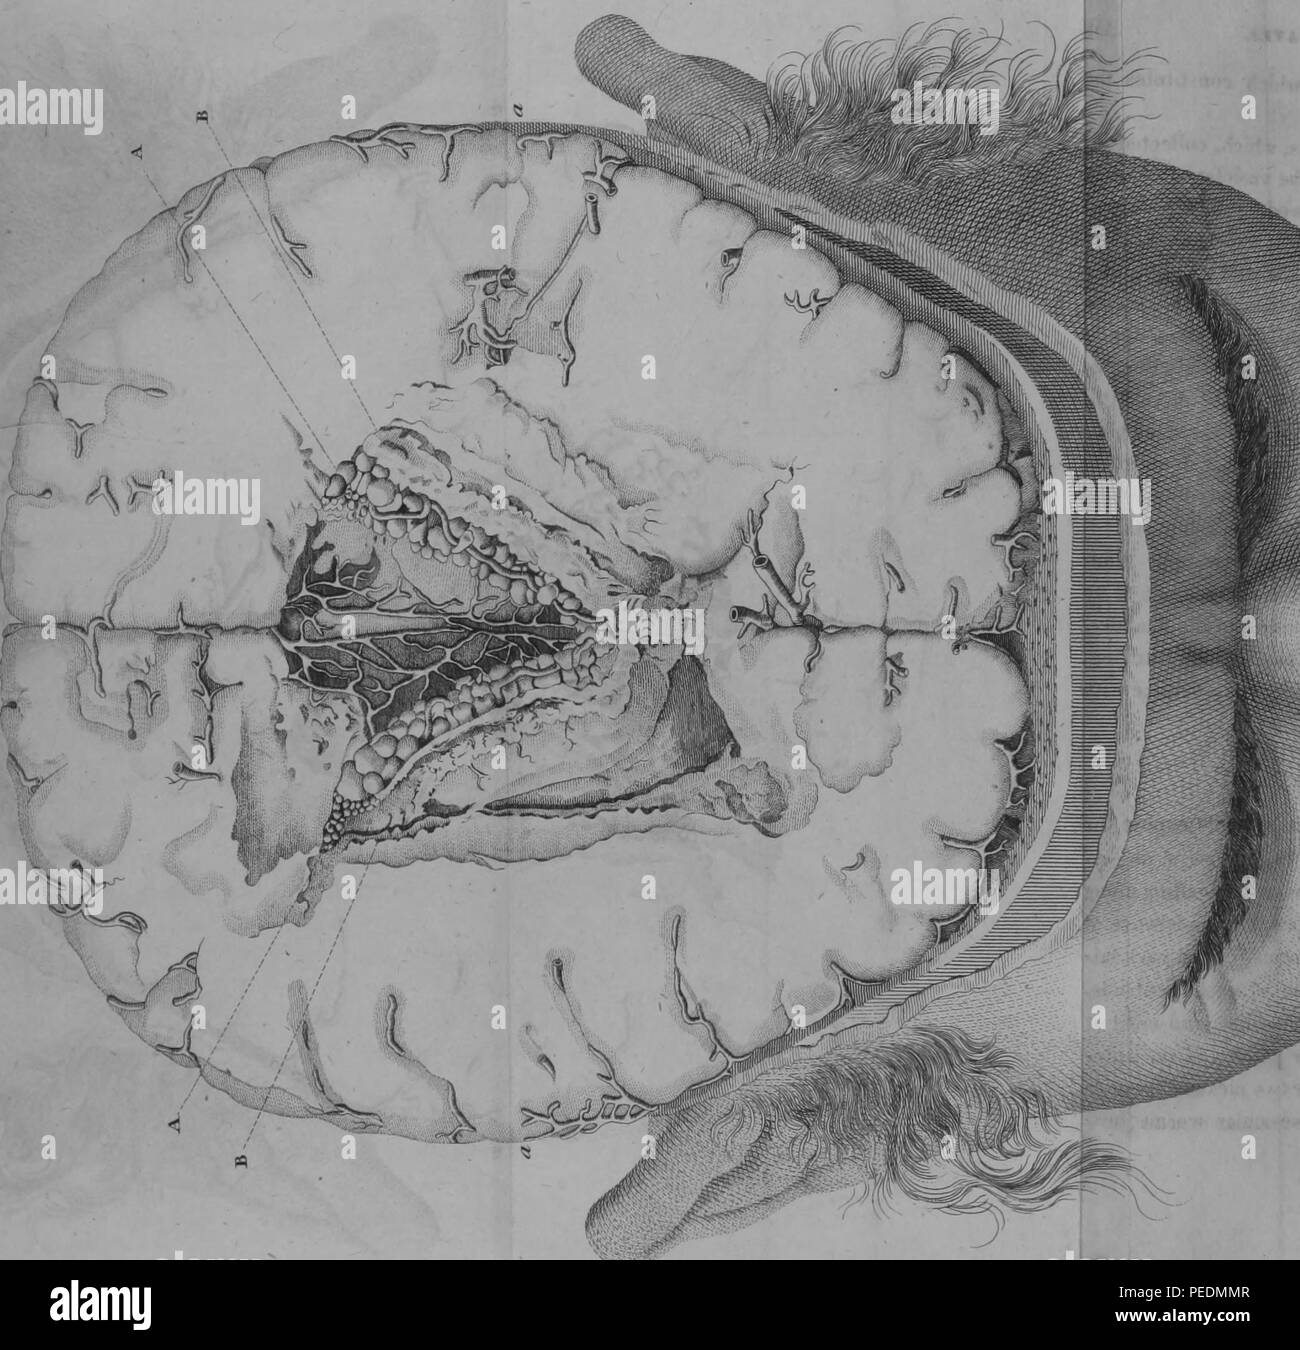 Schwarz-weiß drucken, die einen Querschnitt der lateralen Ventrikel eines menschlichen Gehirns, mit alphabetischen Zahlen, die der Standorte der ventrikulären Wurmerkrankungen, 1825. Mit freundlicher Genehmigung Internet Archive. () Stockfoto